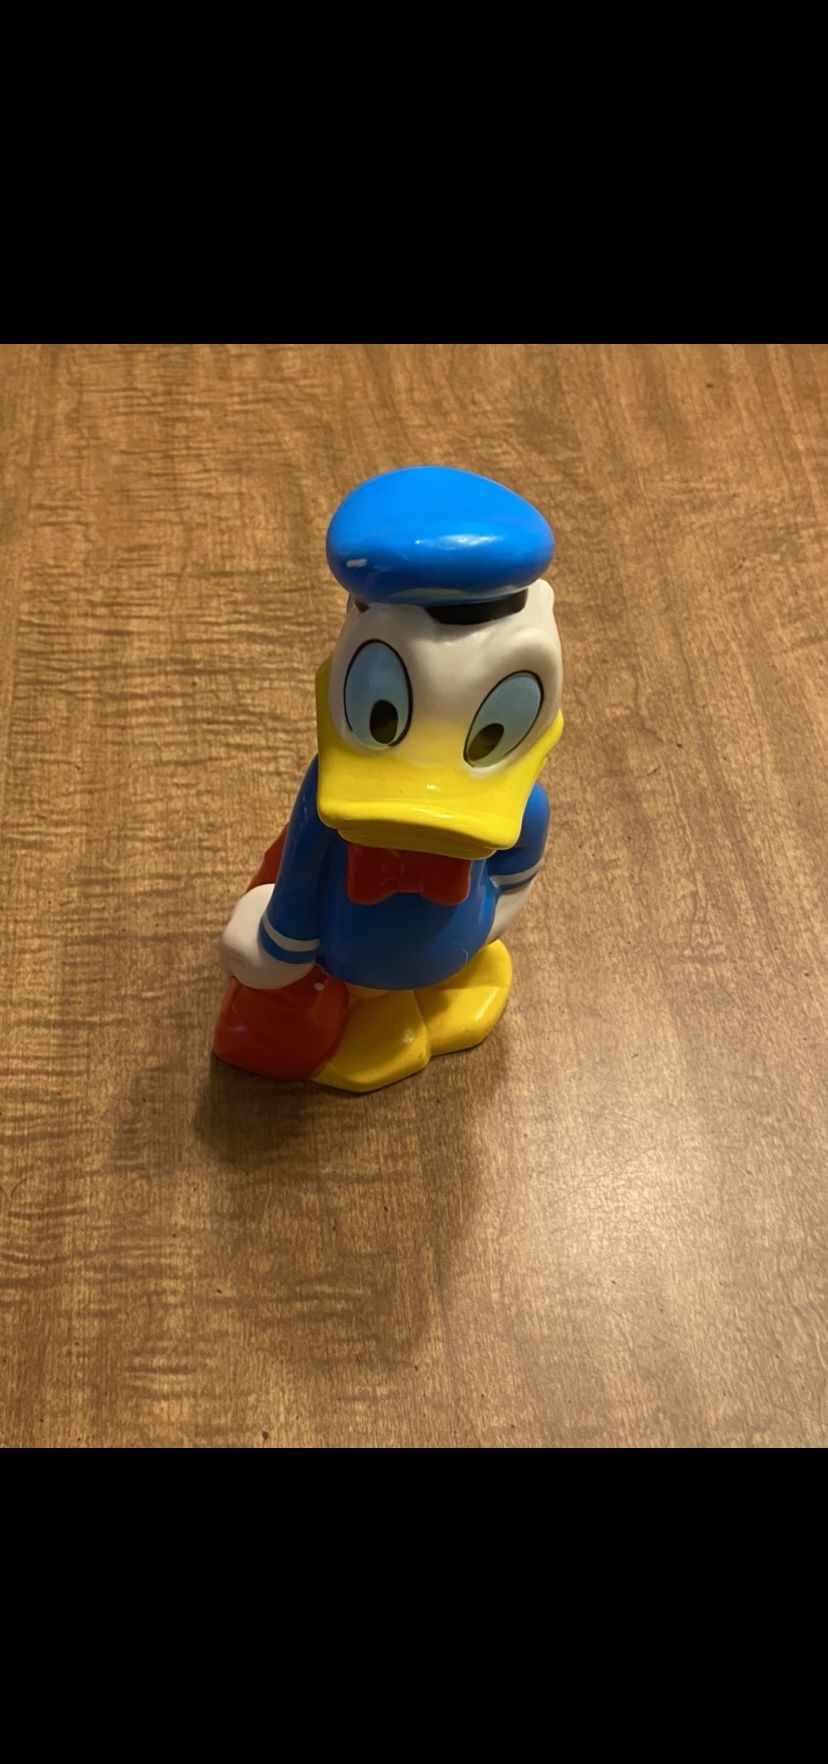 Donald Duck Suitcase Vintage Disney Squeaky Toy (READ DESCRIPTION)